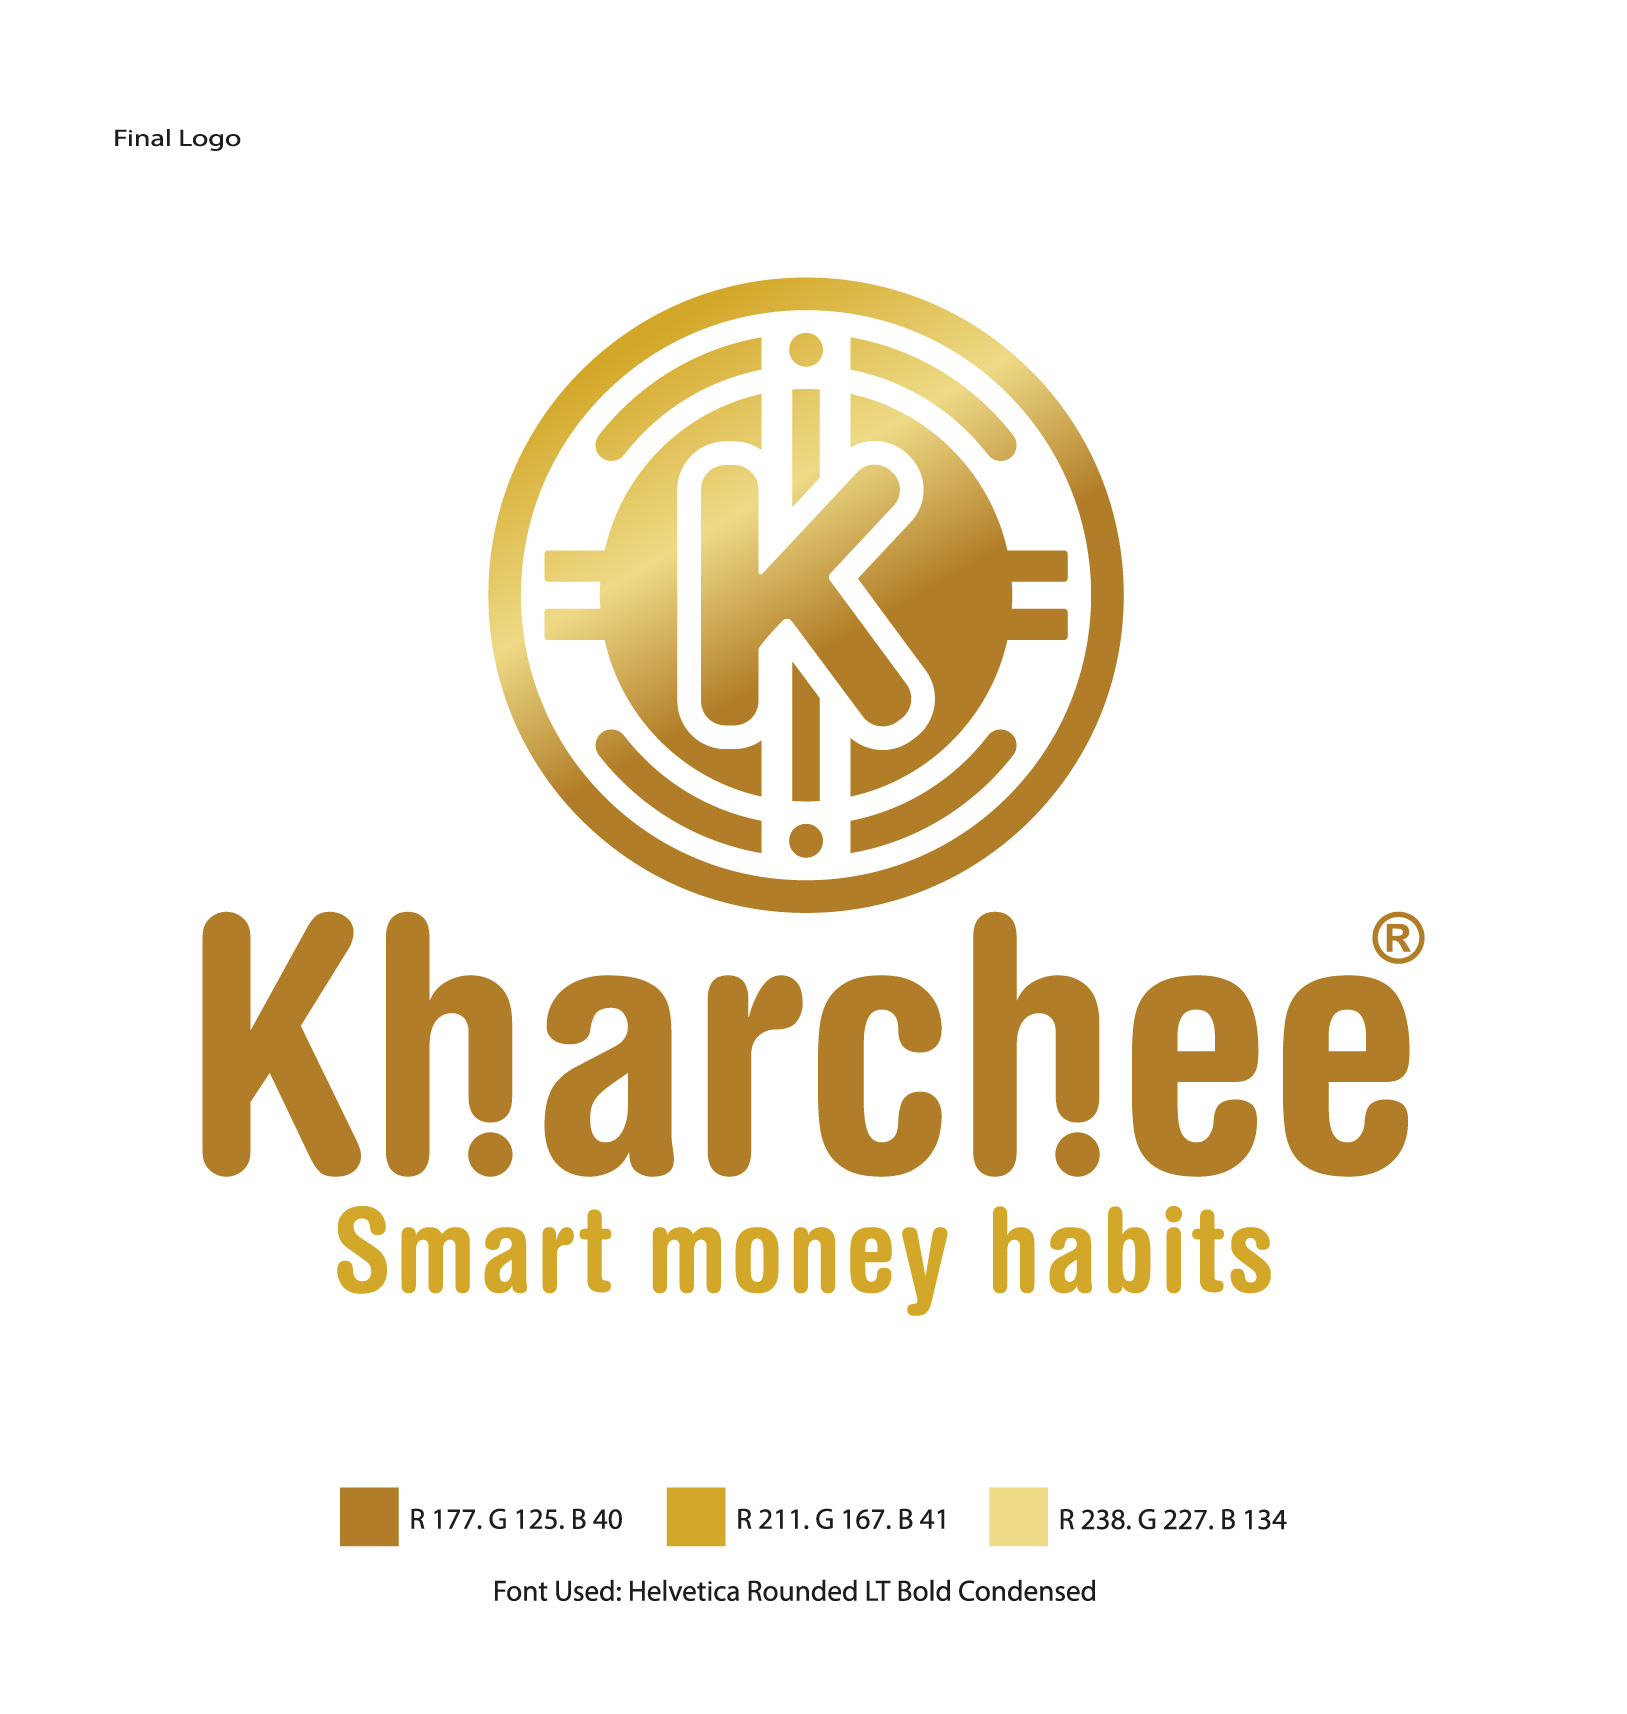 Kharchee